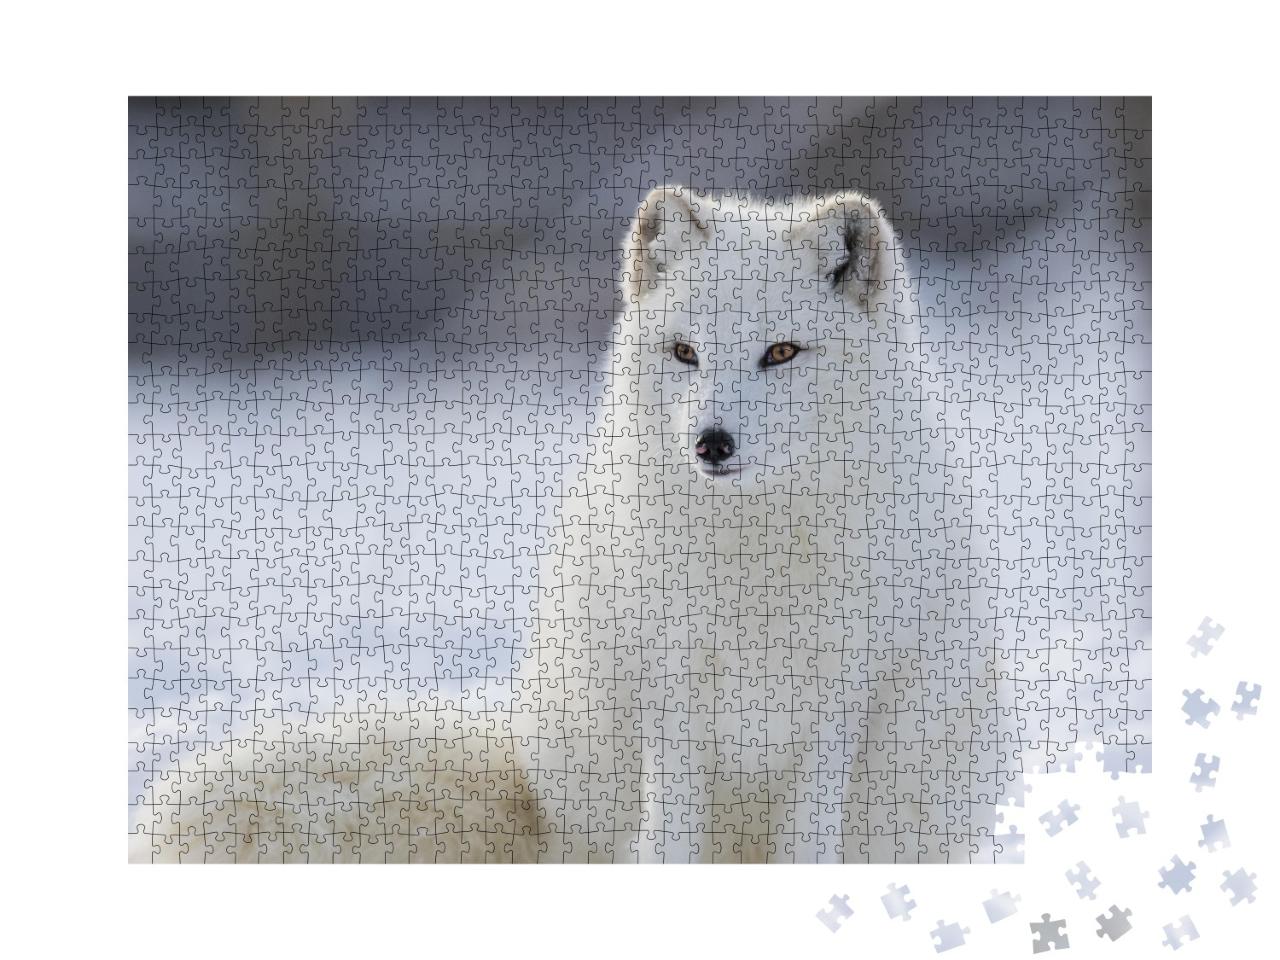 Puzzle de 1000 pièces « Renard polaire en hiver »